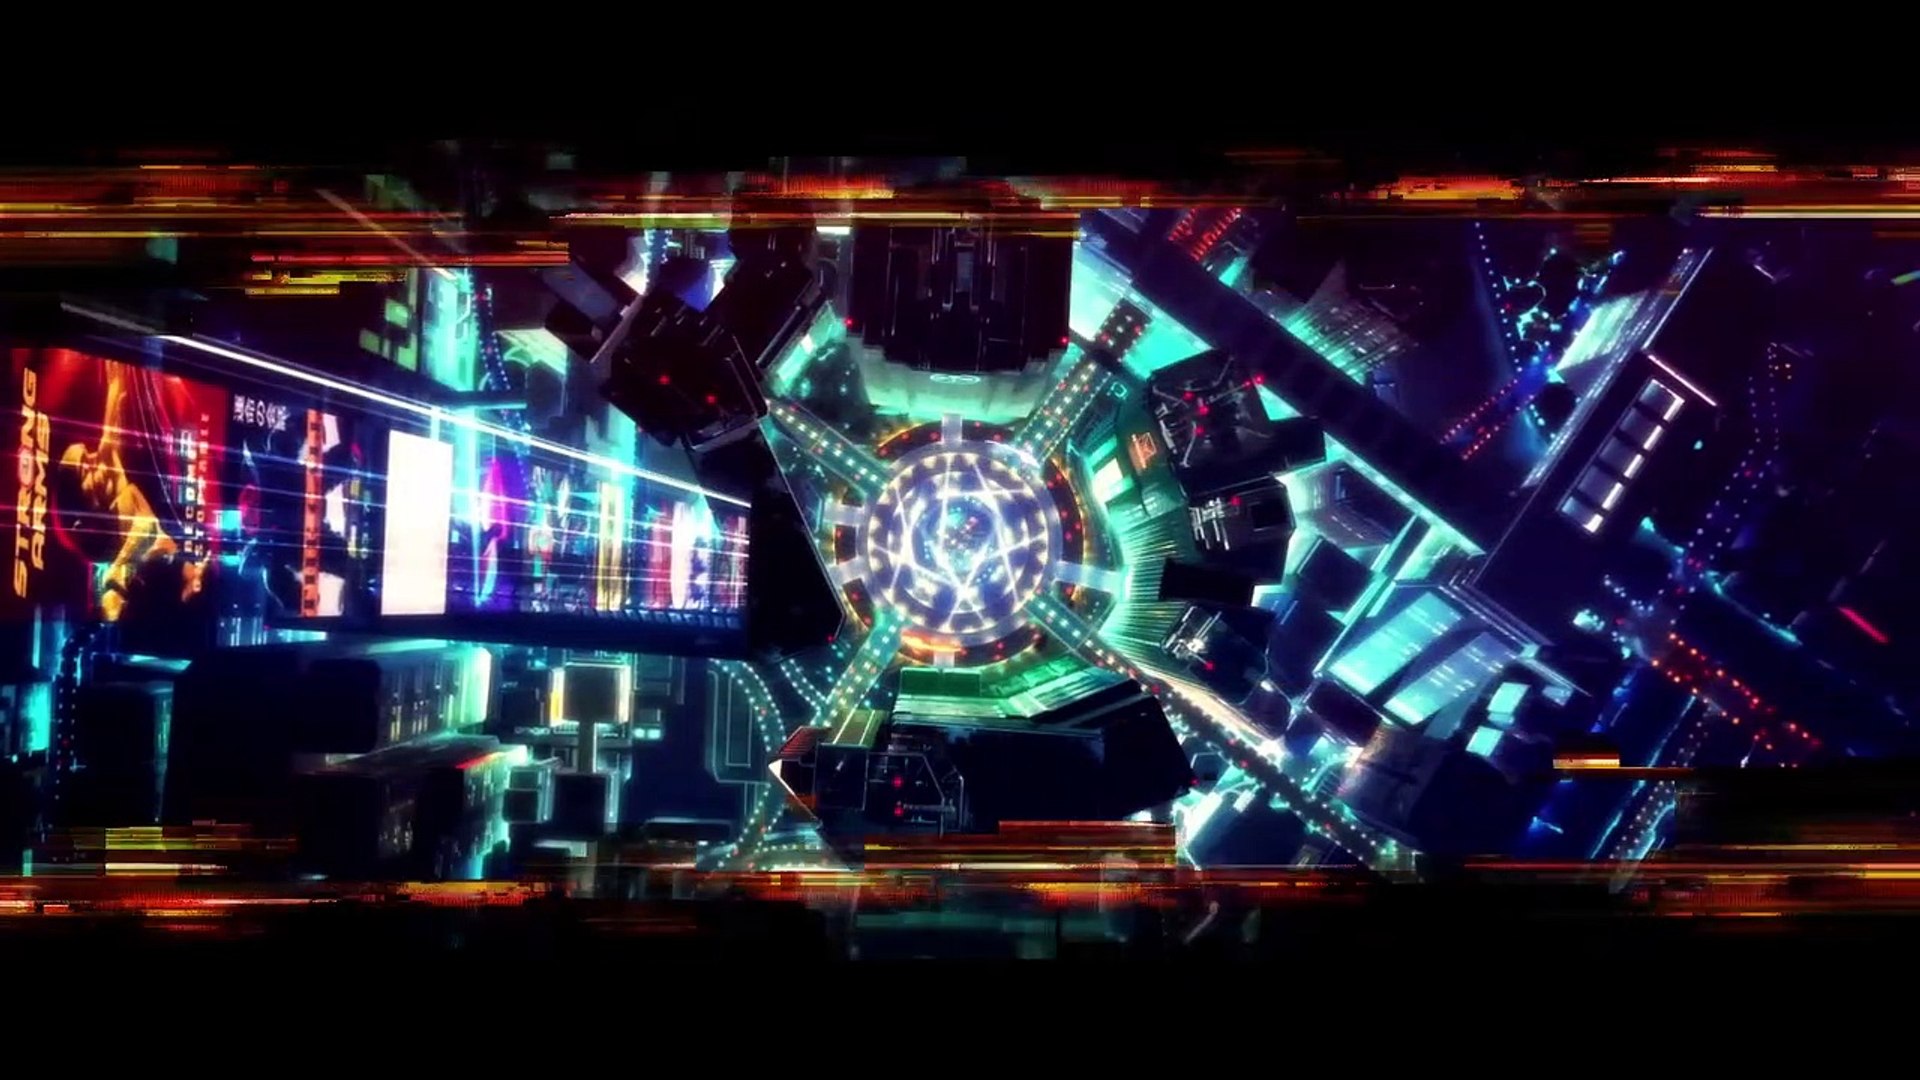 Série de animação Cyberpunk Edgerunners é anunciada em parceria com a  Netflix - Games - R7 Outer Space